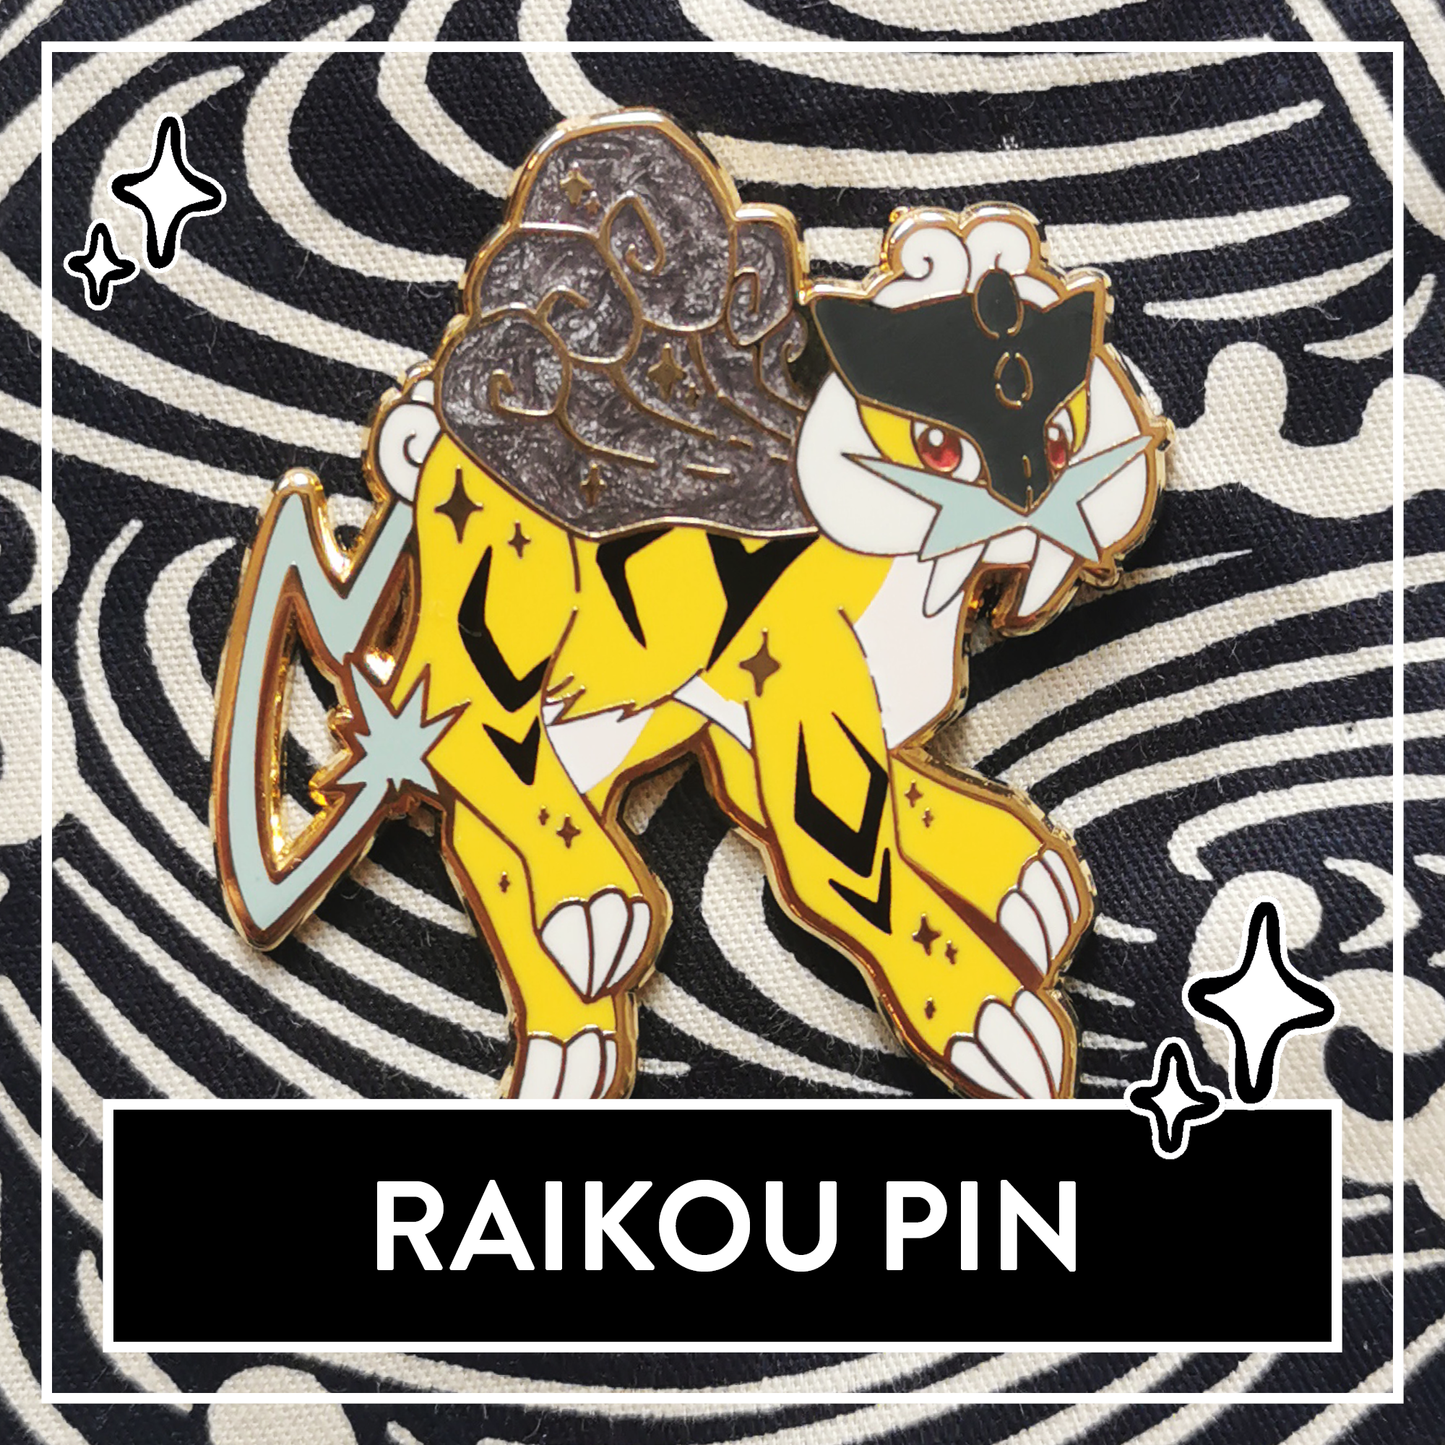 Shiny Raikou & Raikou Pearlescent Enamel Pin